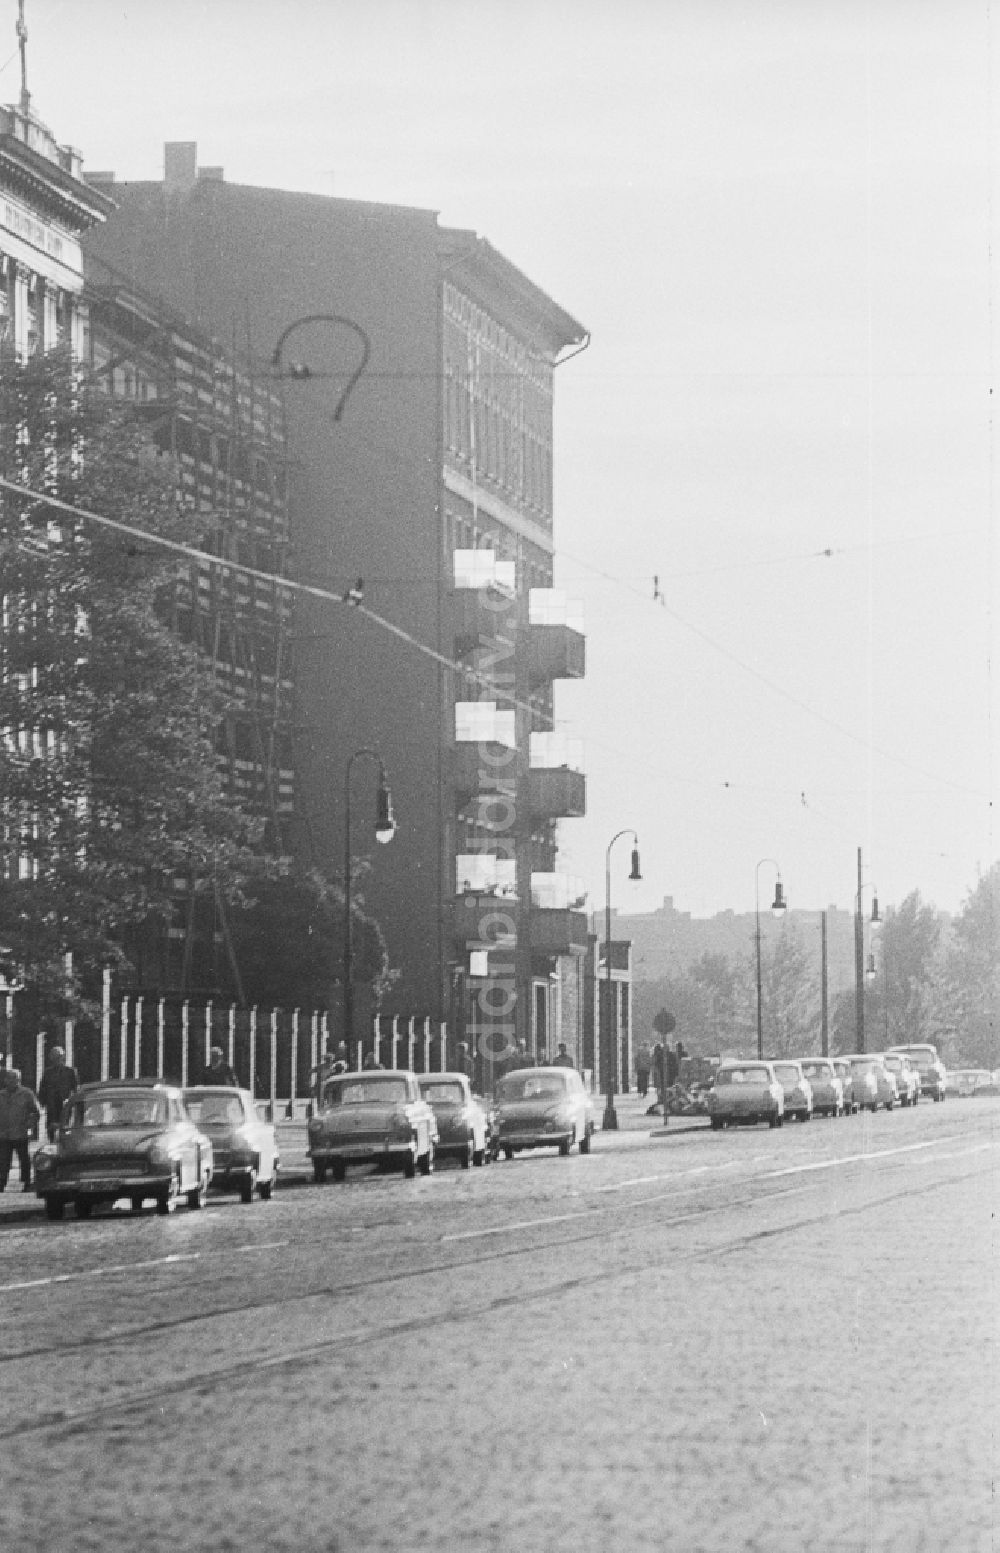 DDR-Fotoarchiv: Berlin - Wohnblocks an der Bornholmer Straße in Berlin, der ehemaligen Hauptstadt der DDR, Deutsche Demokratische Republik